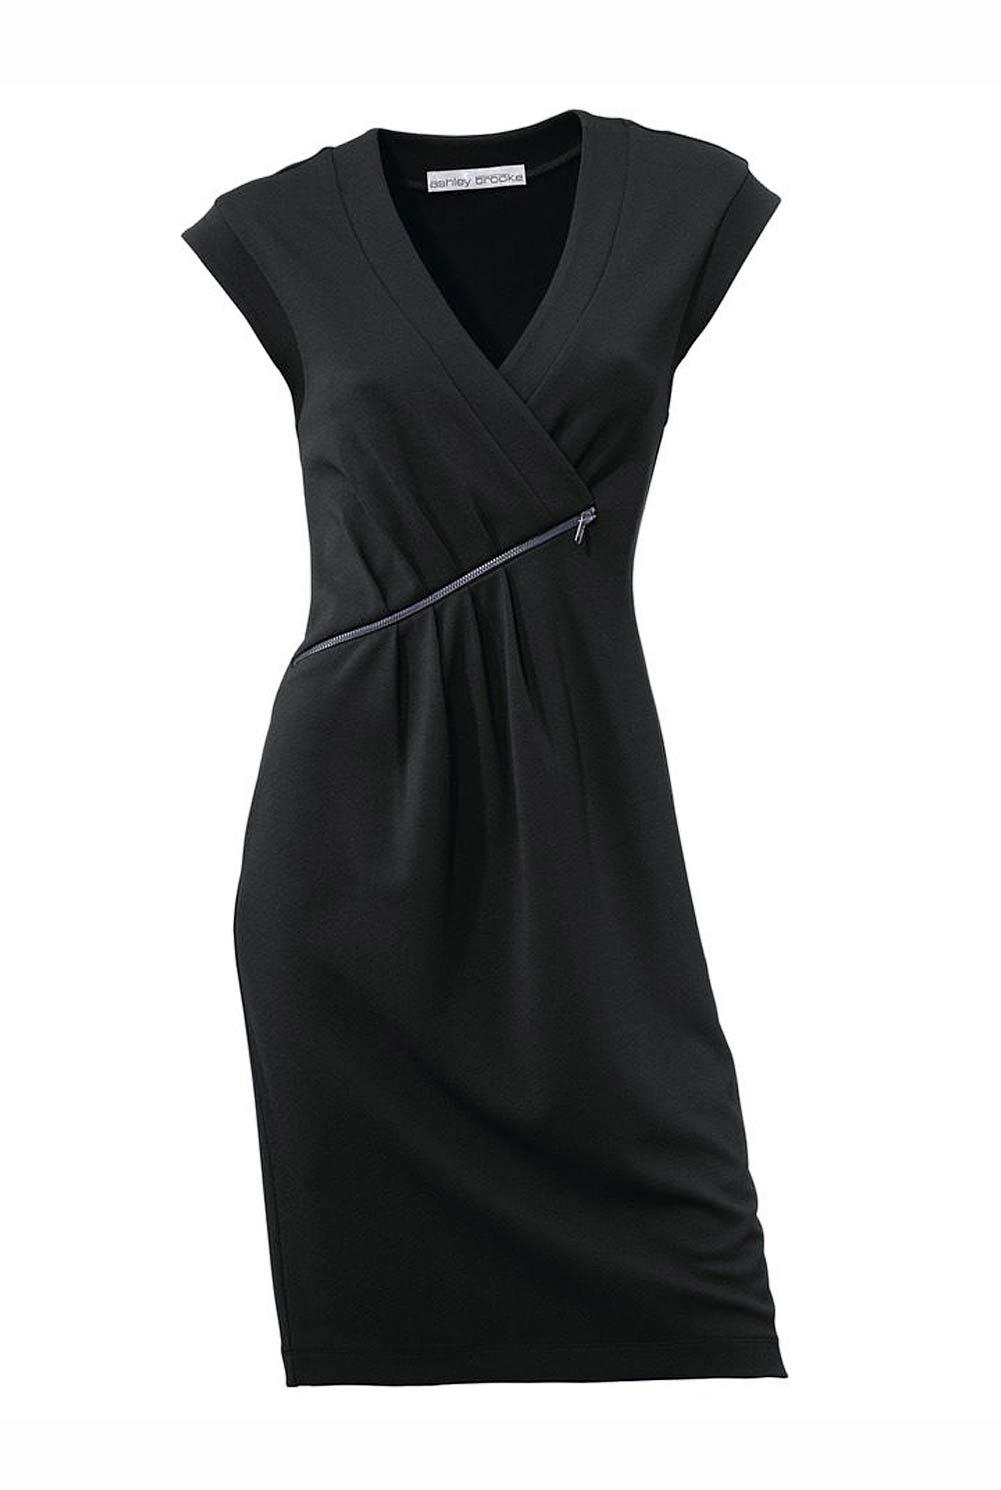 Designer-Kleid schwarz.